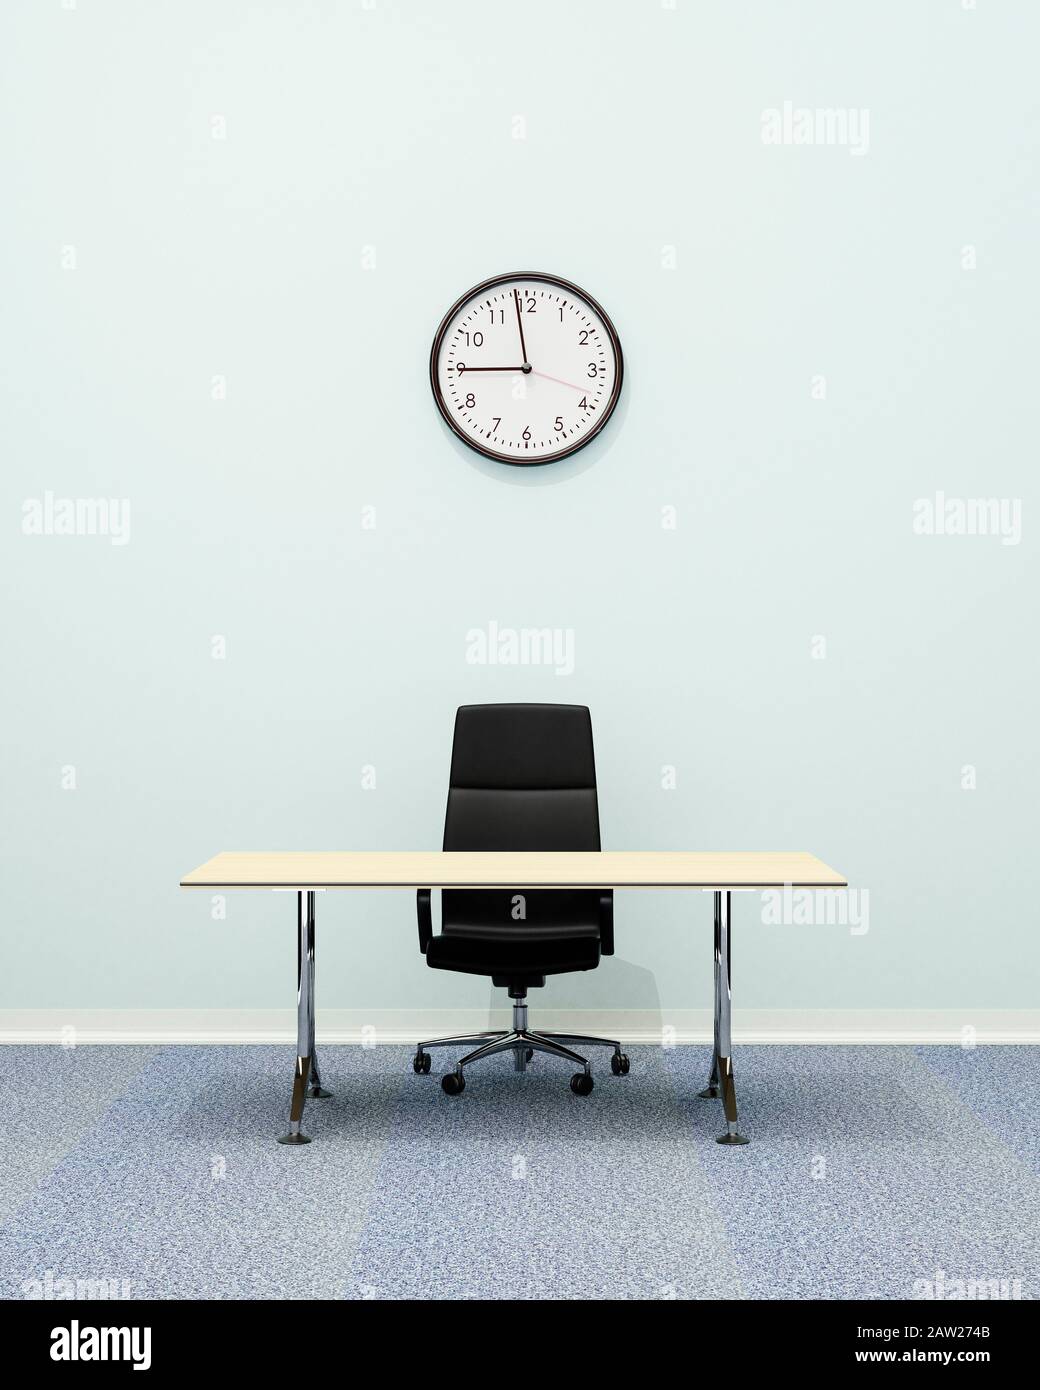 Interni per ufficio, sedia da ufficio executive in pelle e scrivania vuota con orologio a parete per 9am Foto Stock